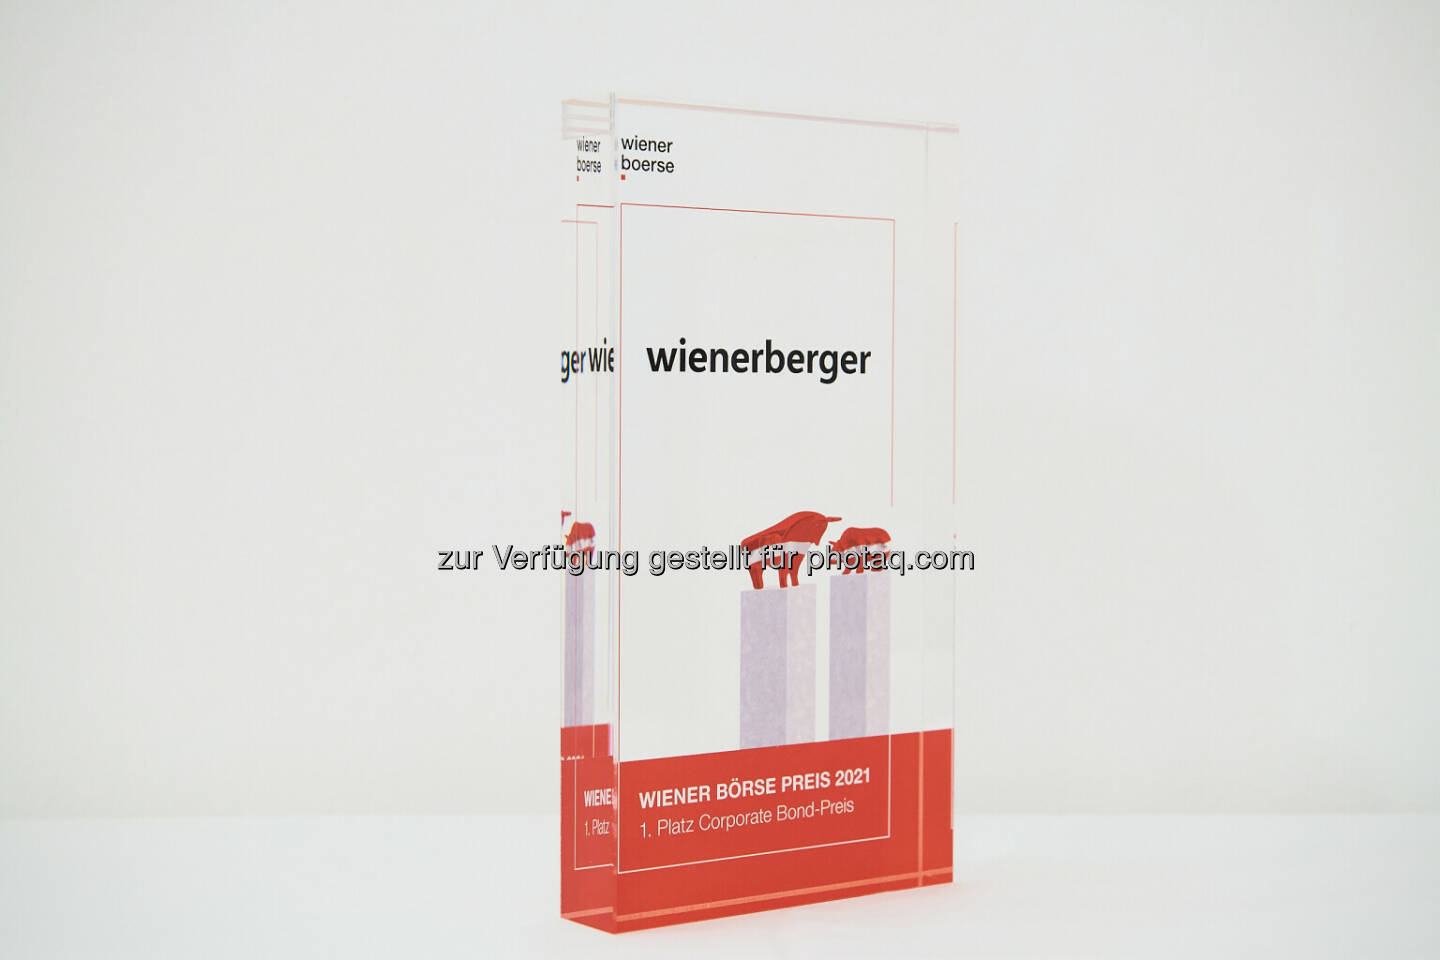 Corporate Bond-Preis an Wienerberger - Wiener Börse Preis 2021